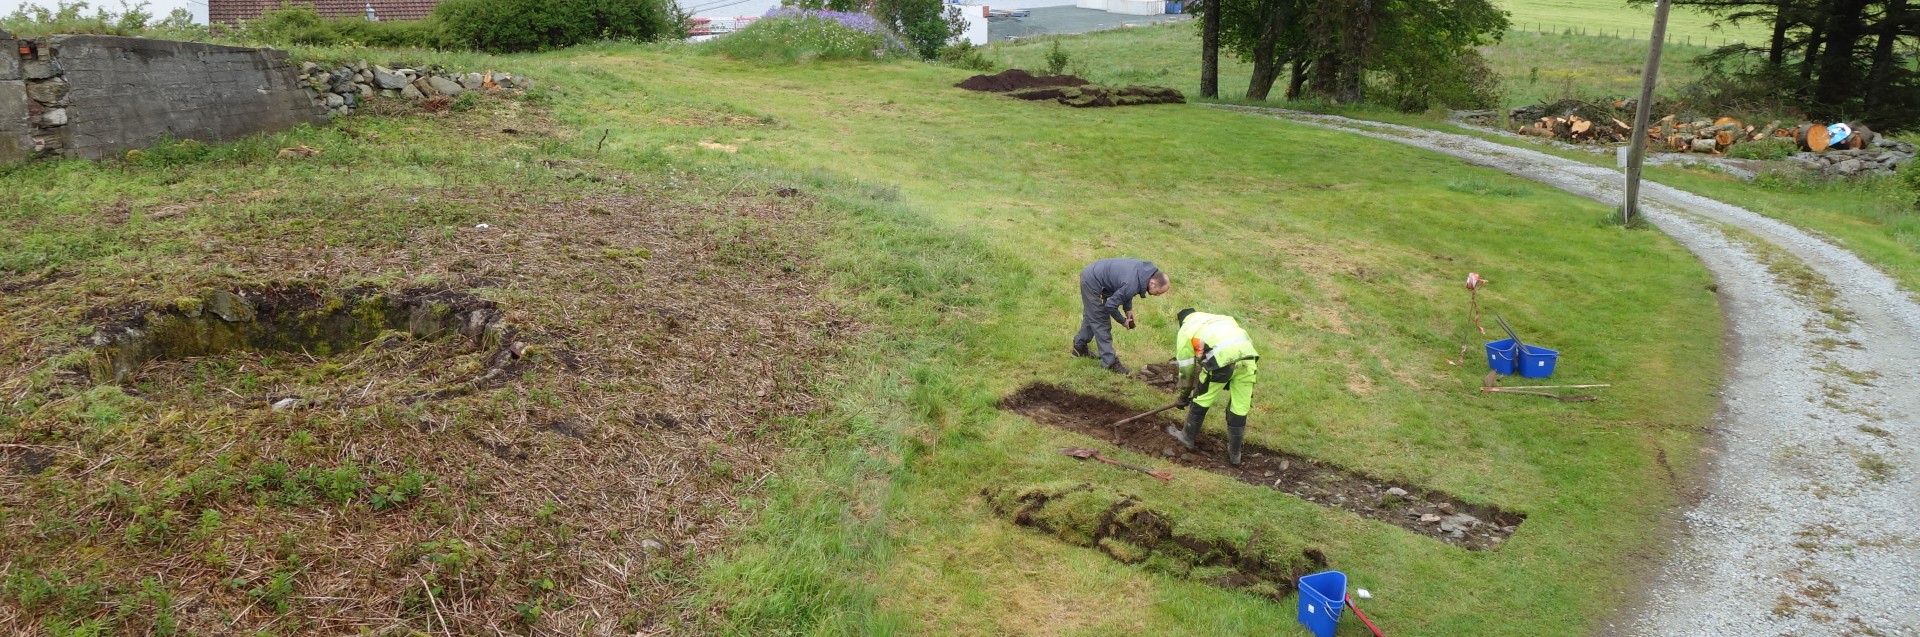 Arkeologene har funnet flere kongegraver fra begynnelsen av vikingtiden i Norge. Vikingkongene ble begravet i skip med gull og perler. Foto: Arkeologisk museum, UiS